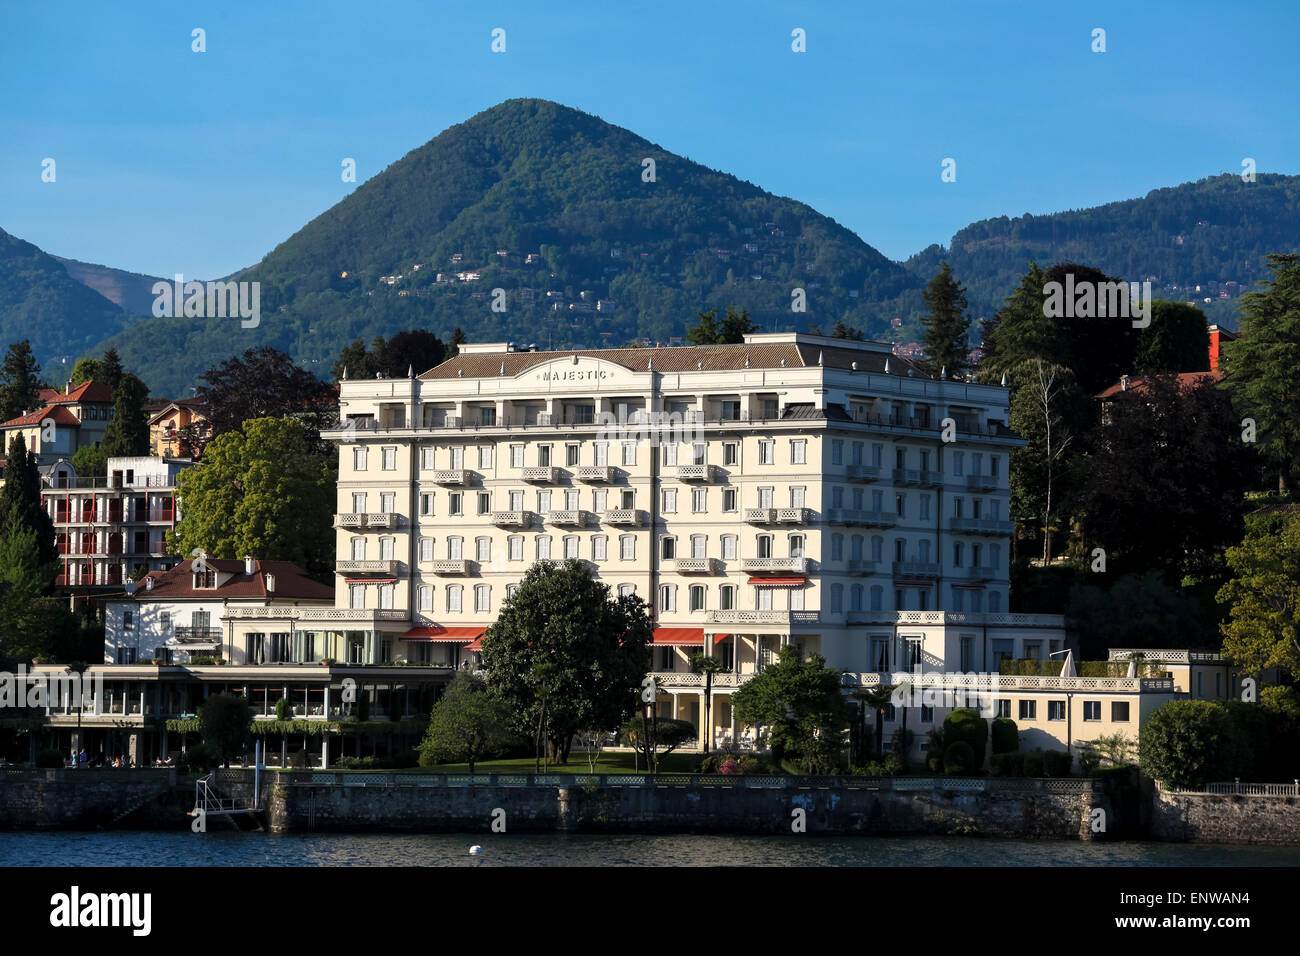 Grand Hotel Majestic in Verbania Pallanza Stockfoto